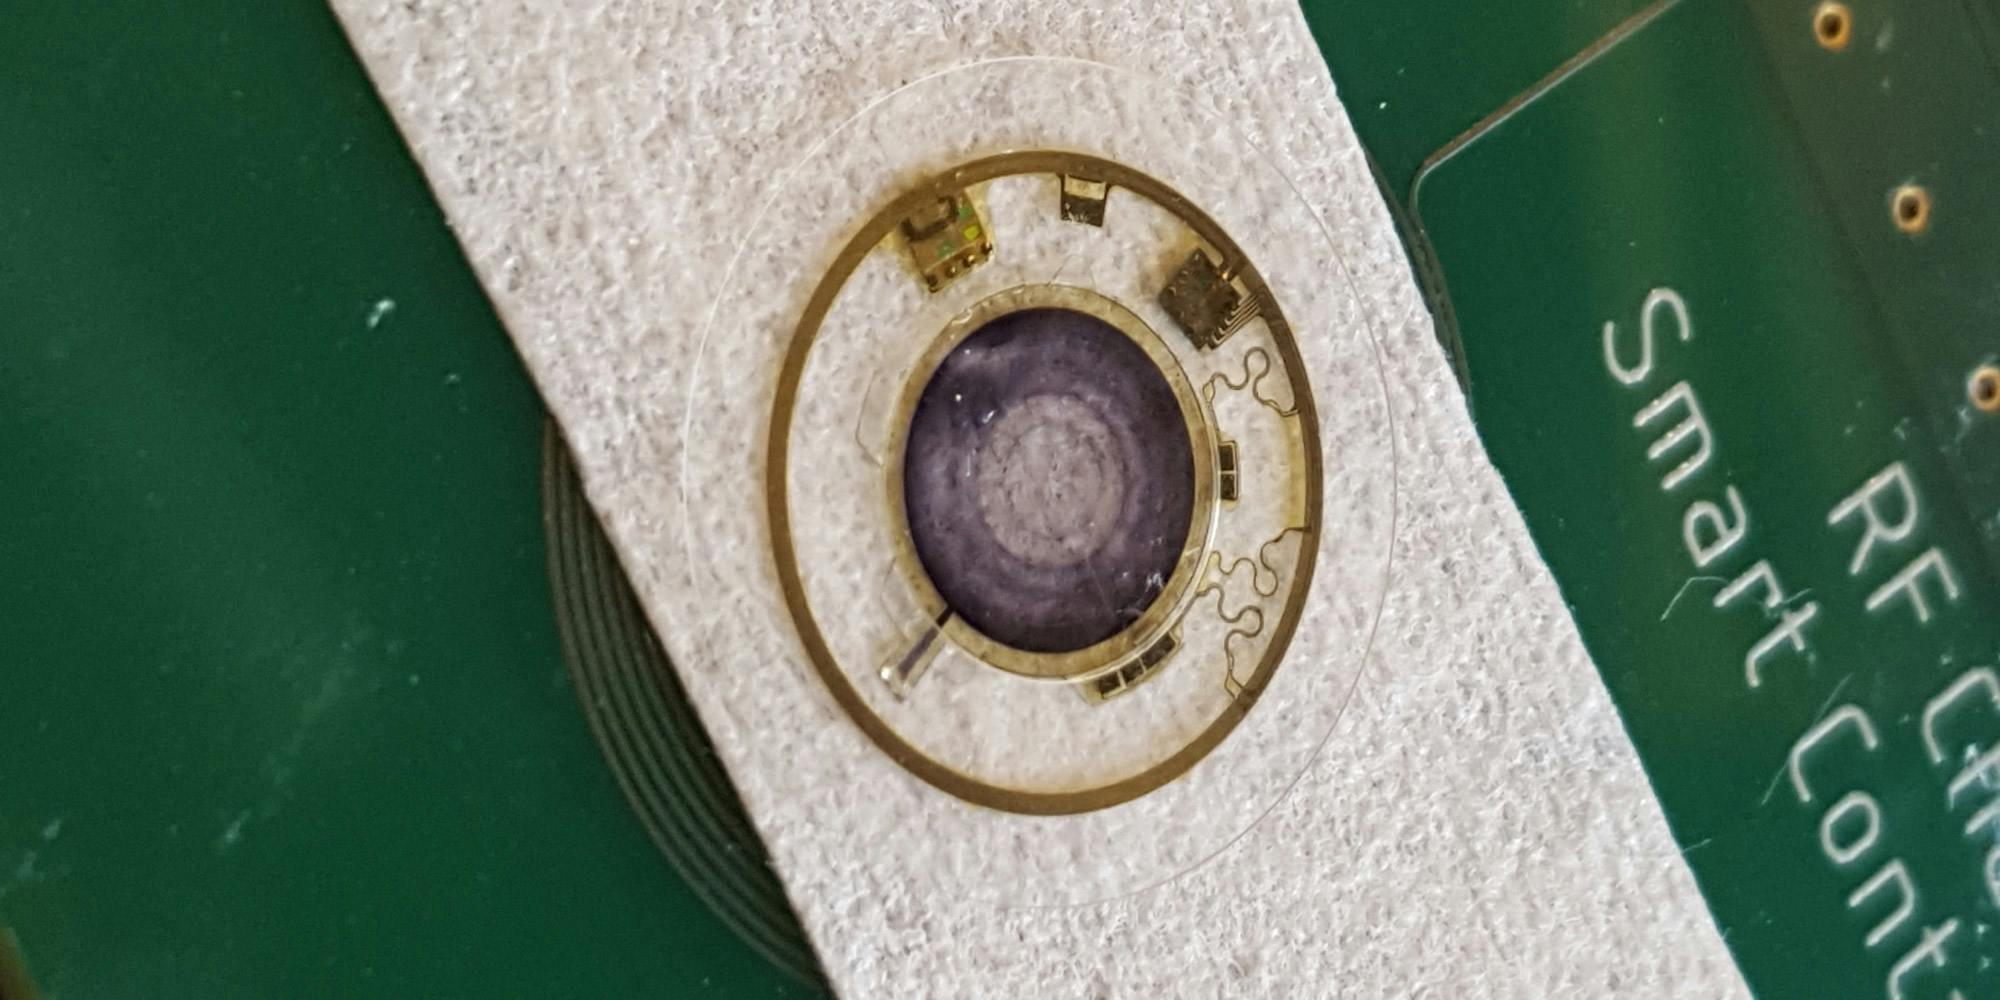 Smart Contact Lens Mimicking the Human Iris